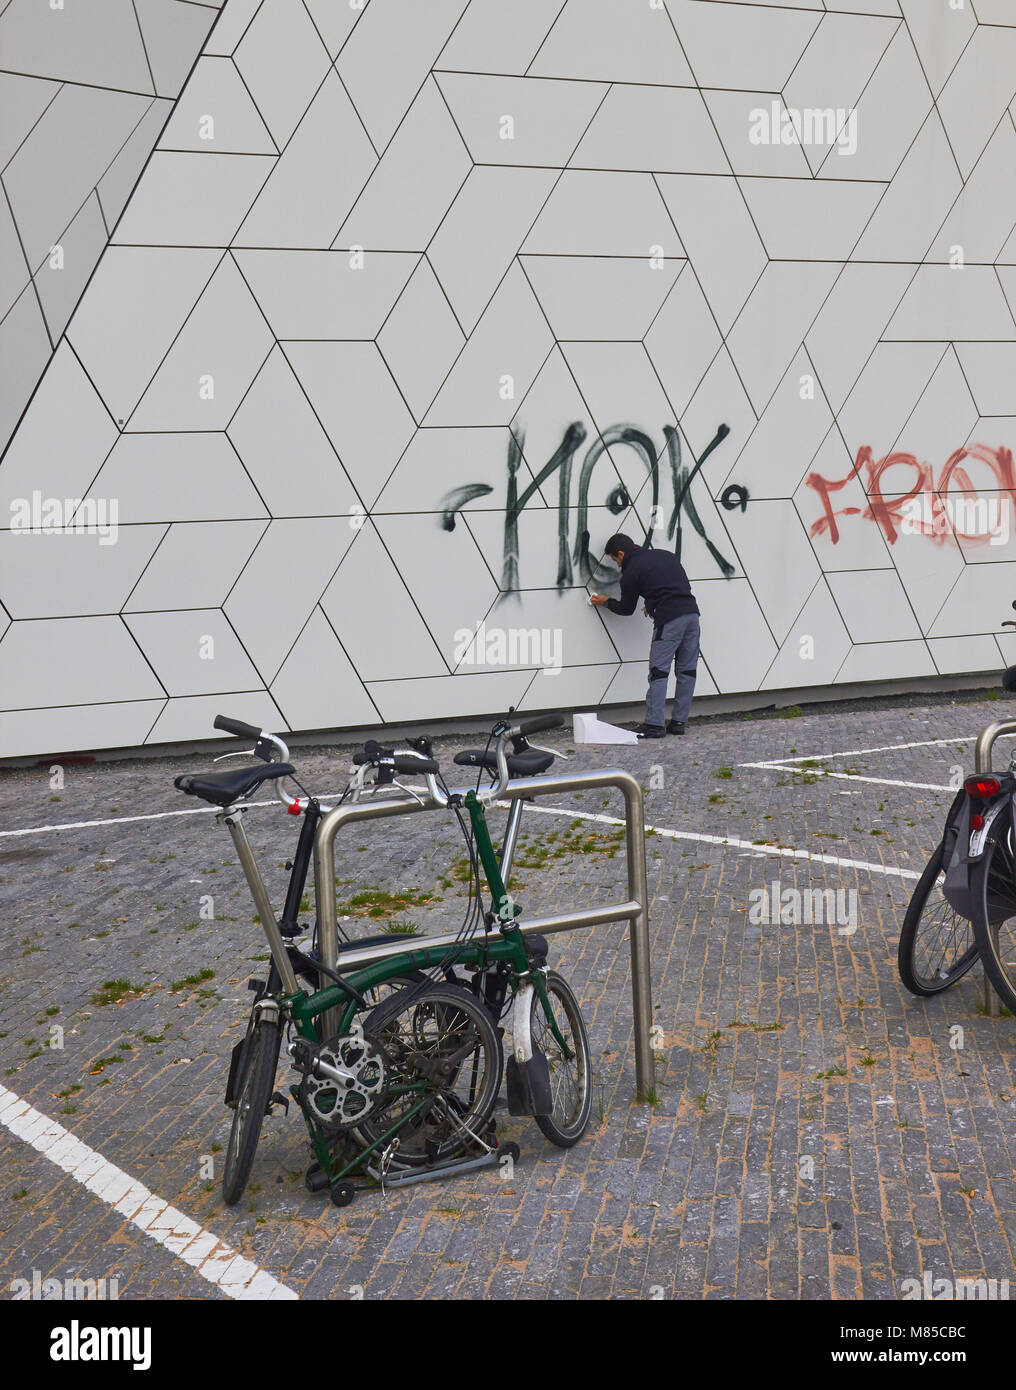 L'uomo rimozione di graffiti, occhio Film Instittute, Overhoeks, Amsterdam-Noord, Amsterdam, Paesi Bassi. Foto Stock